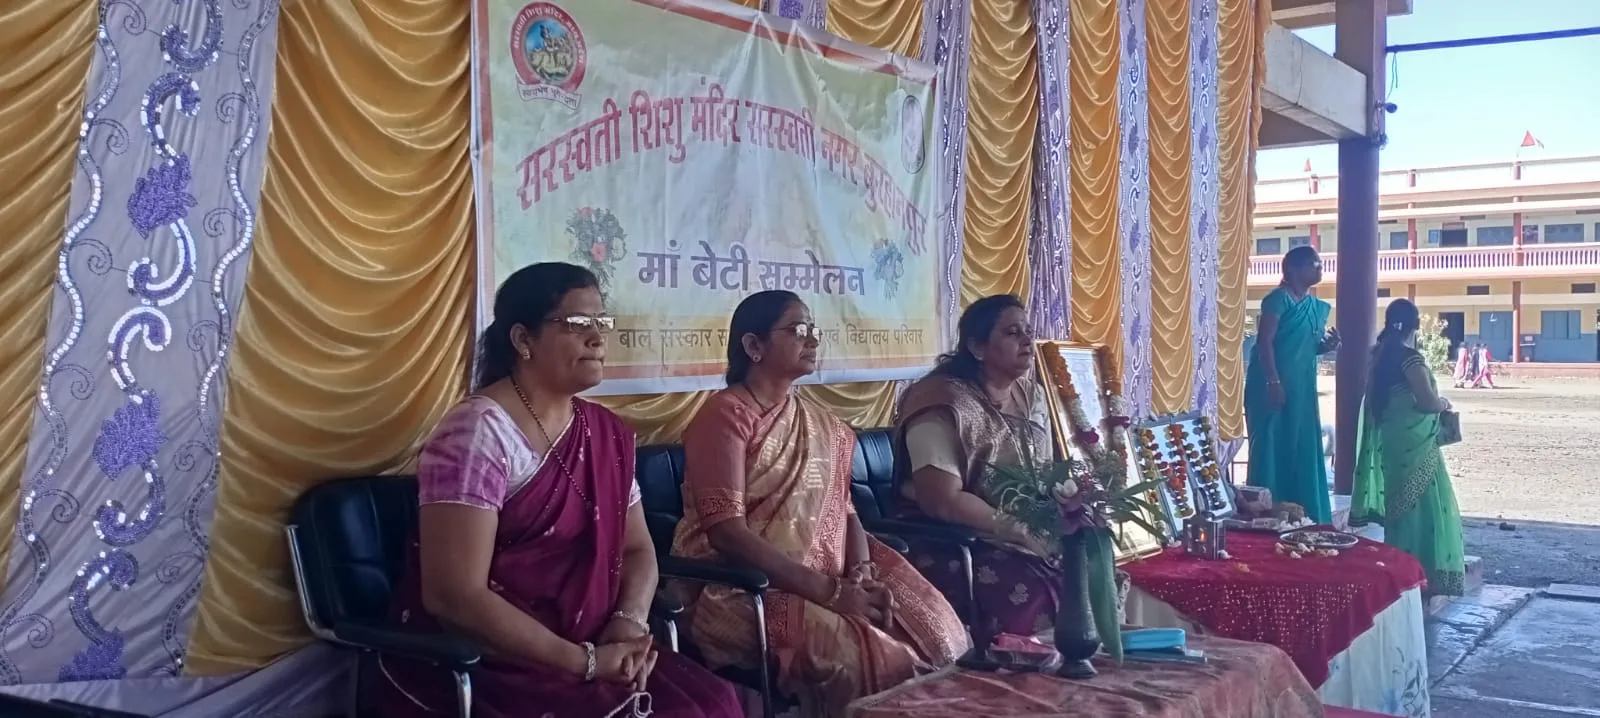 सरस्वती शिशु मंदिर सरस्वती नगर बुरहानपुर में मां बेटी सम्मेलन का आयोजन किया गया | New India Times